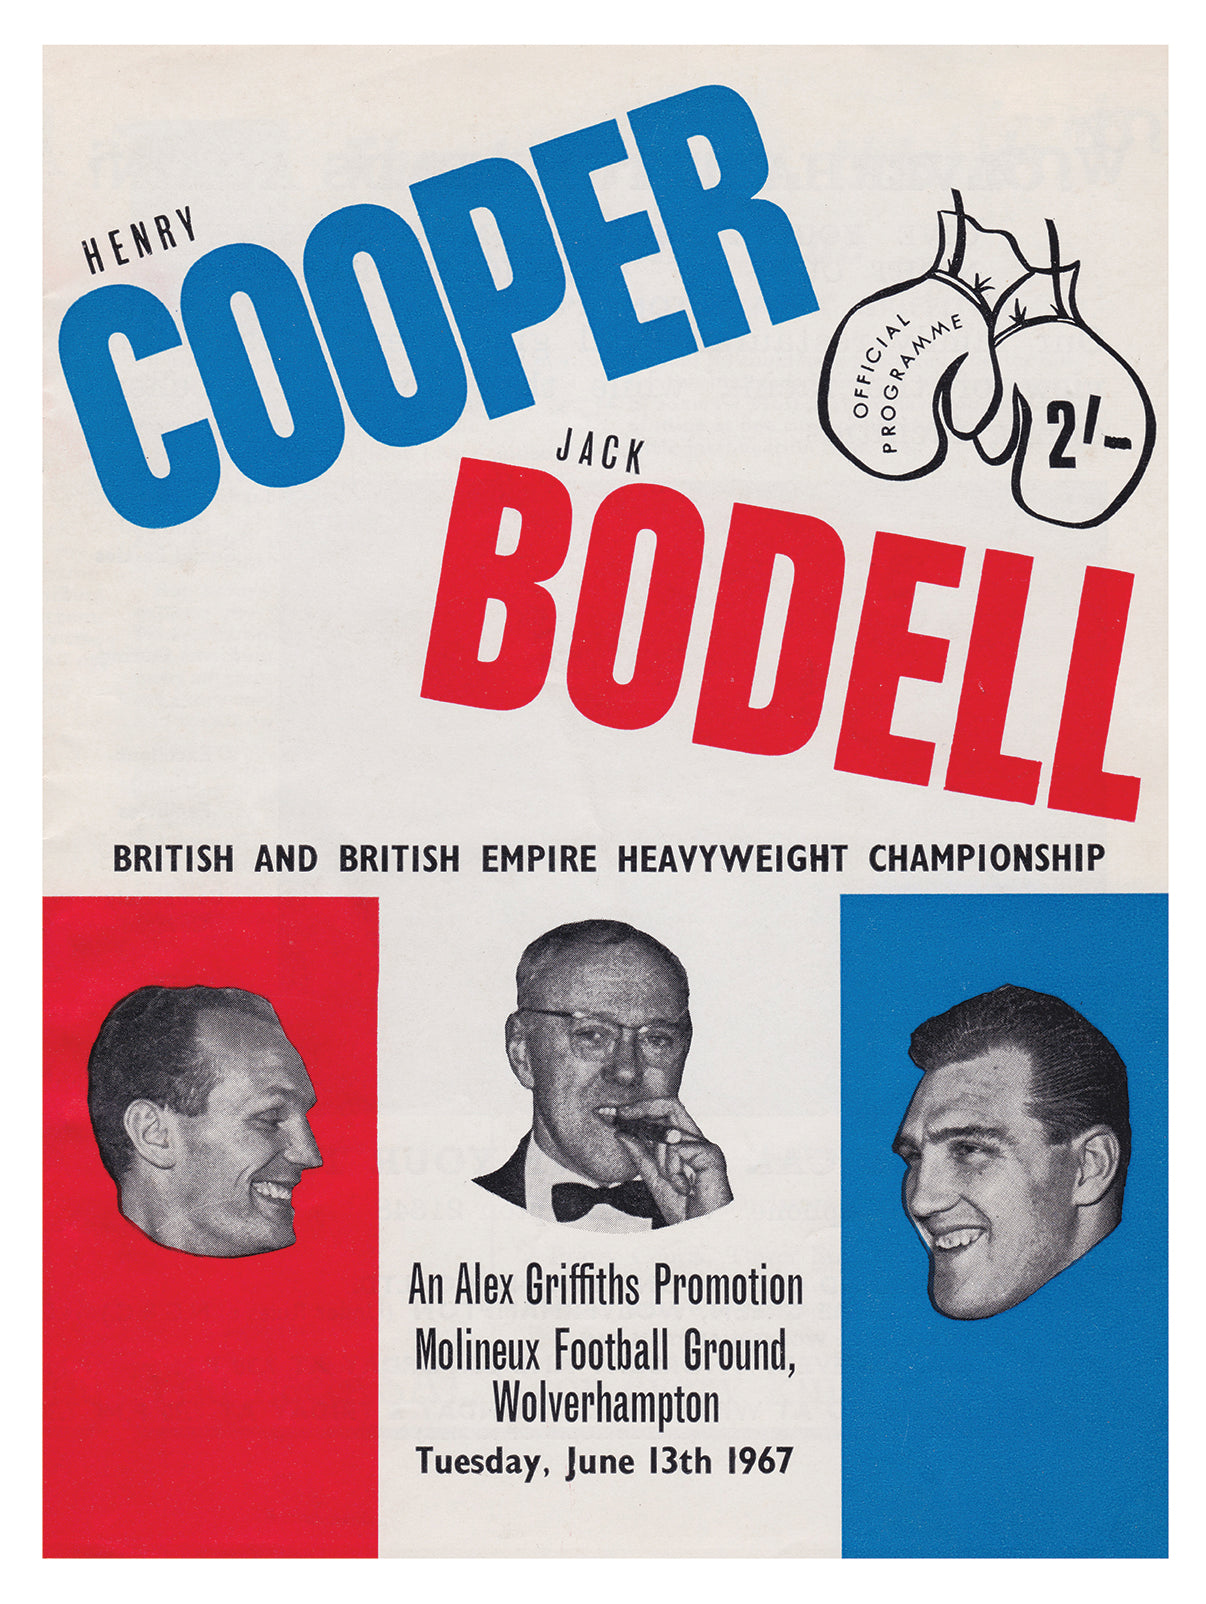 POSTER - HENRY COOPER vs. JACK BODELL